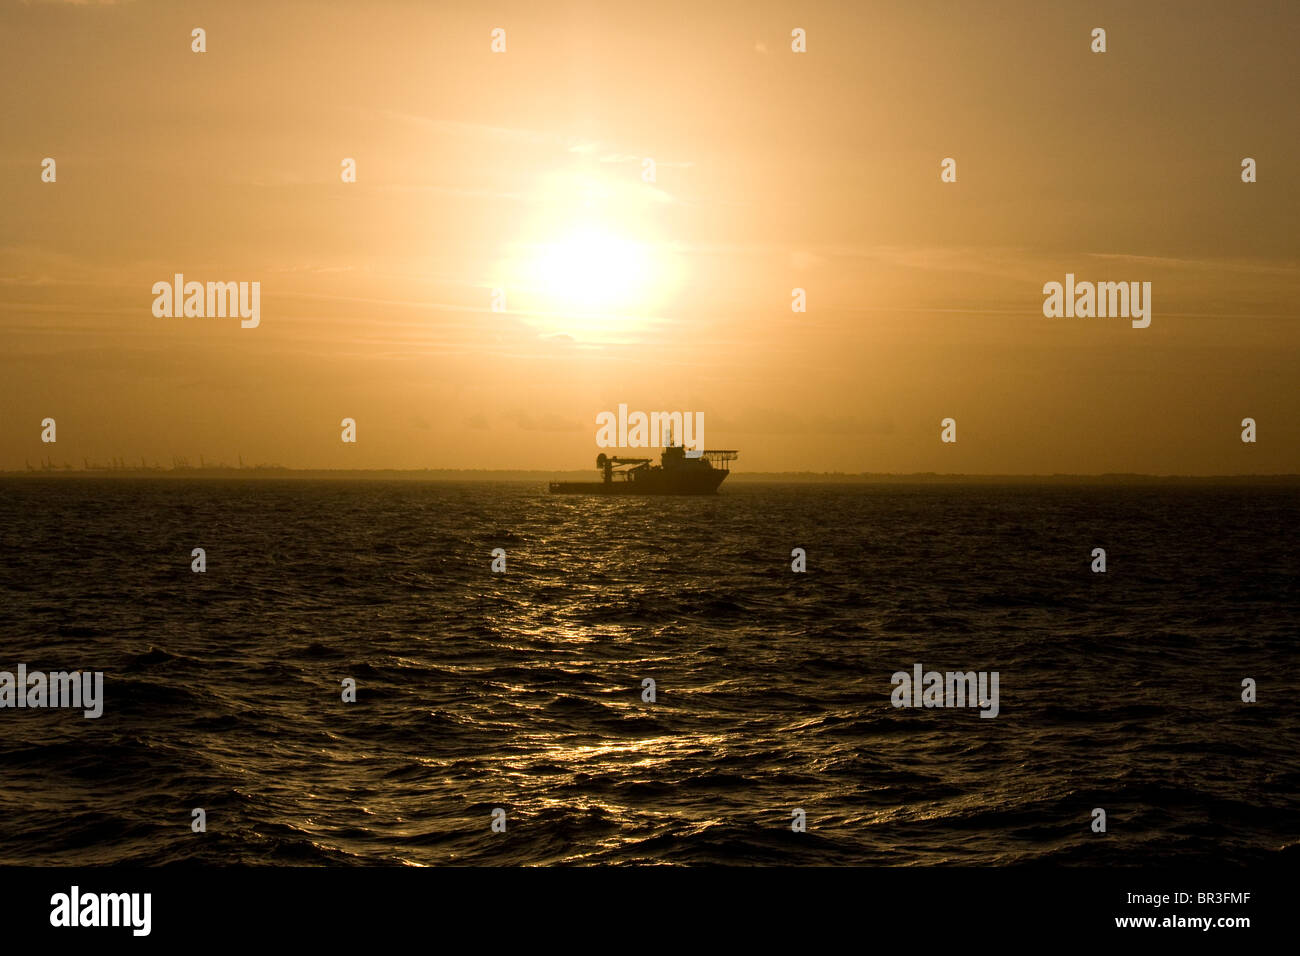 Offshore-Multi-Versorgungsschiff oder Msv auch bekannt Ad dp Schiff im Sonnenuntergang mit Hubschrauber-Landung Hubschrauberlandeplatz an Bord Stockfoto